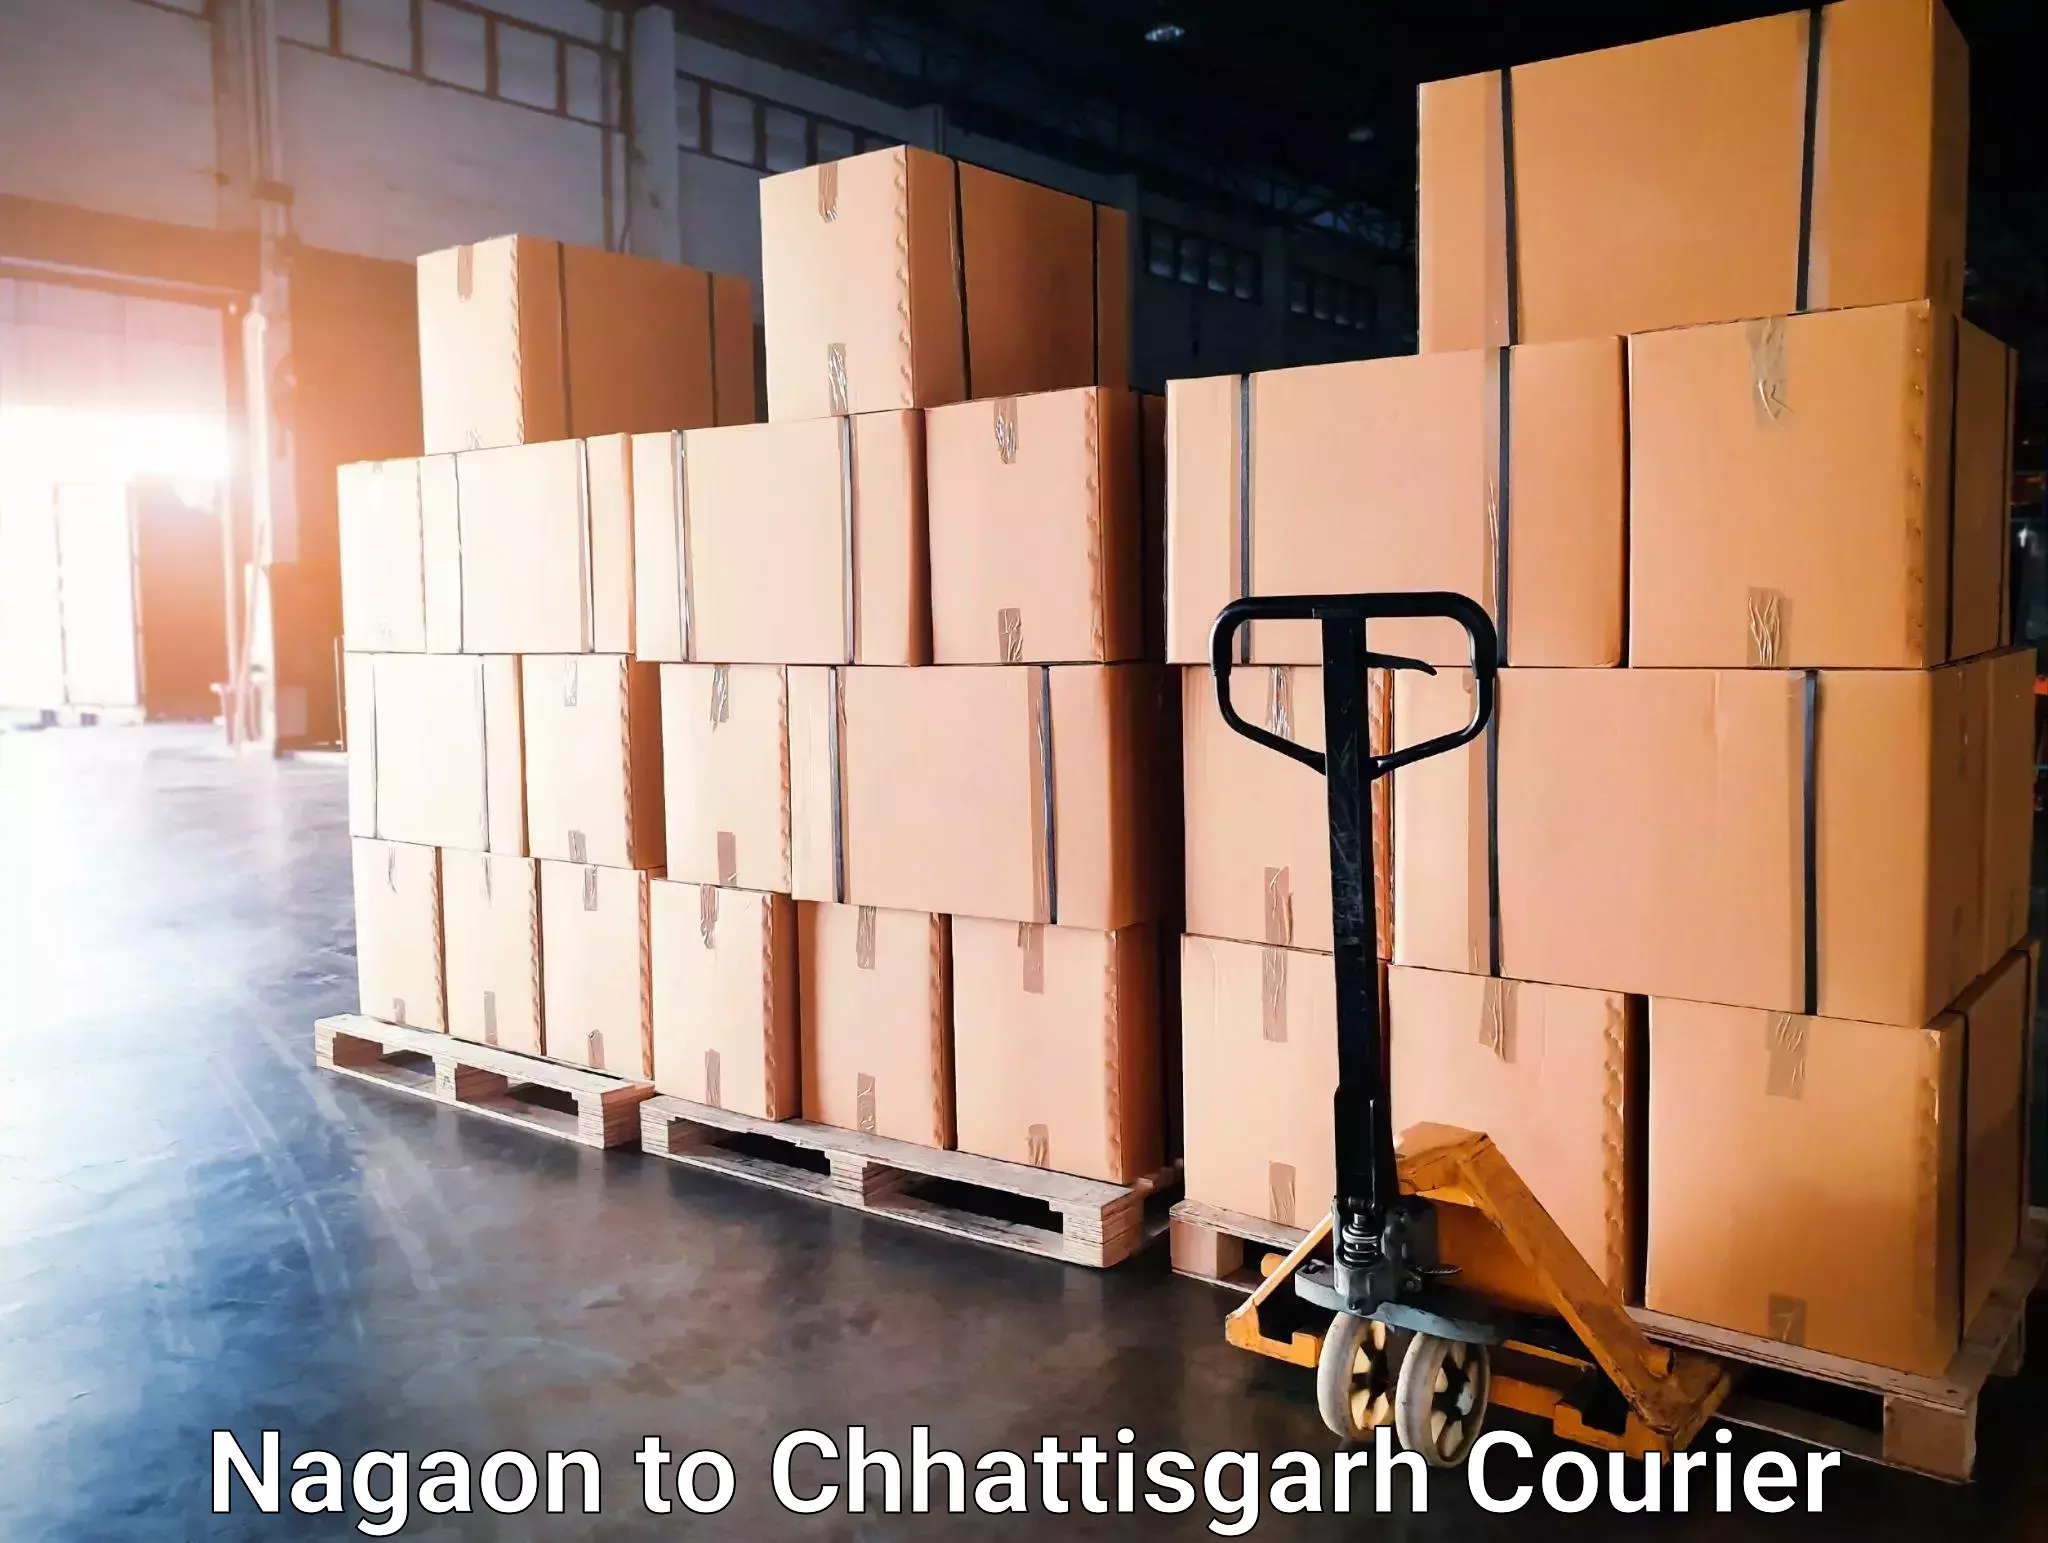 Weekend courier service Nagaon to Bijapur Chhattisgarh